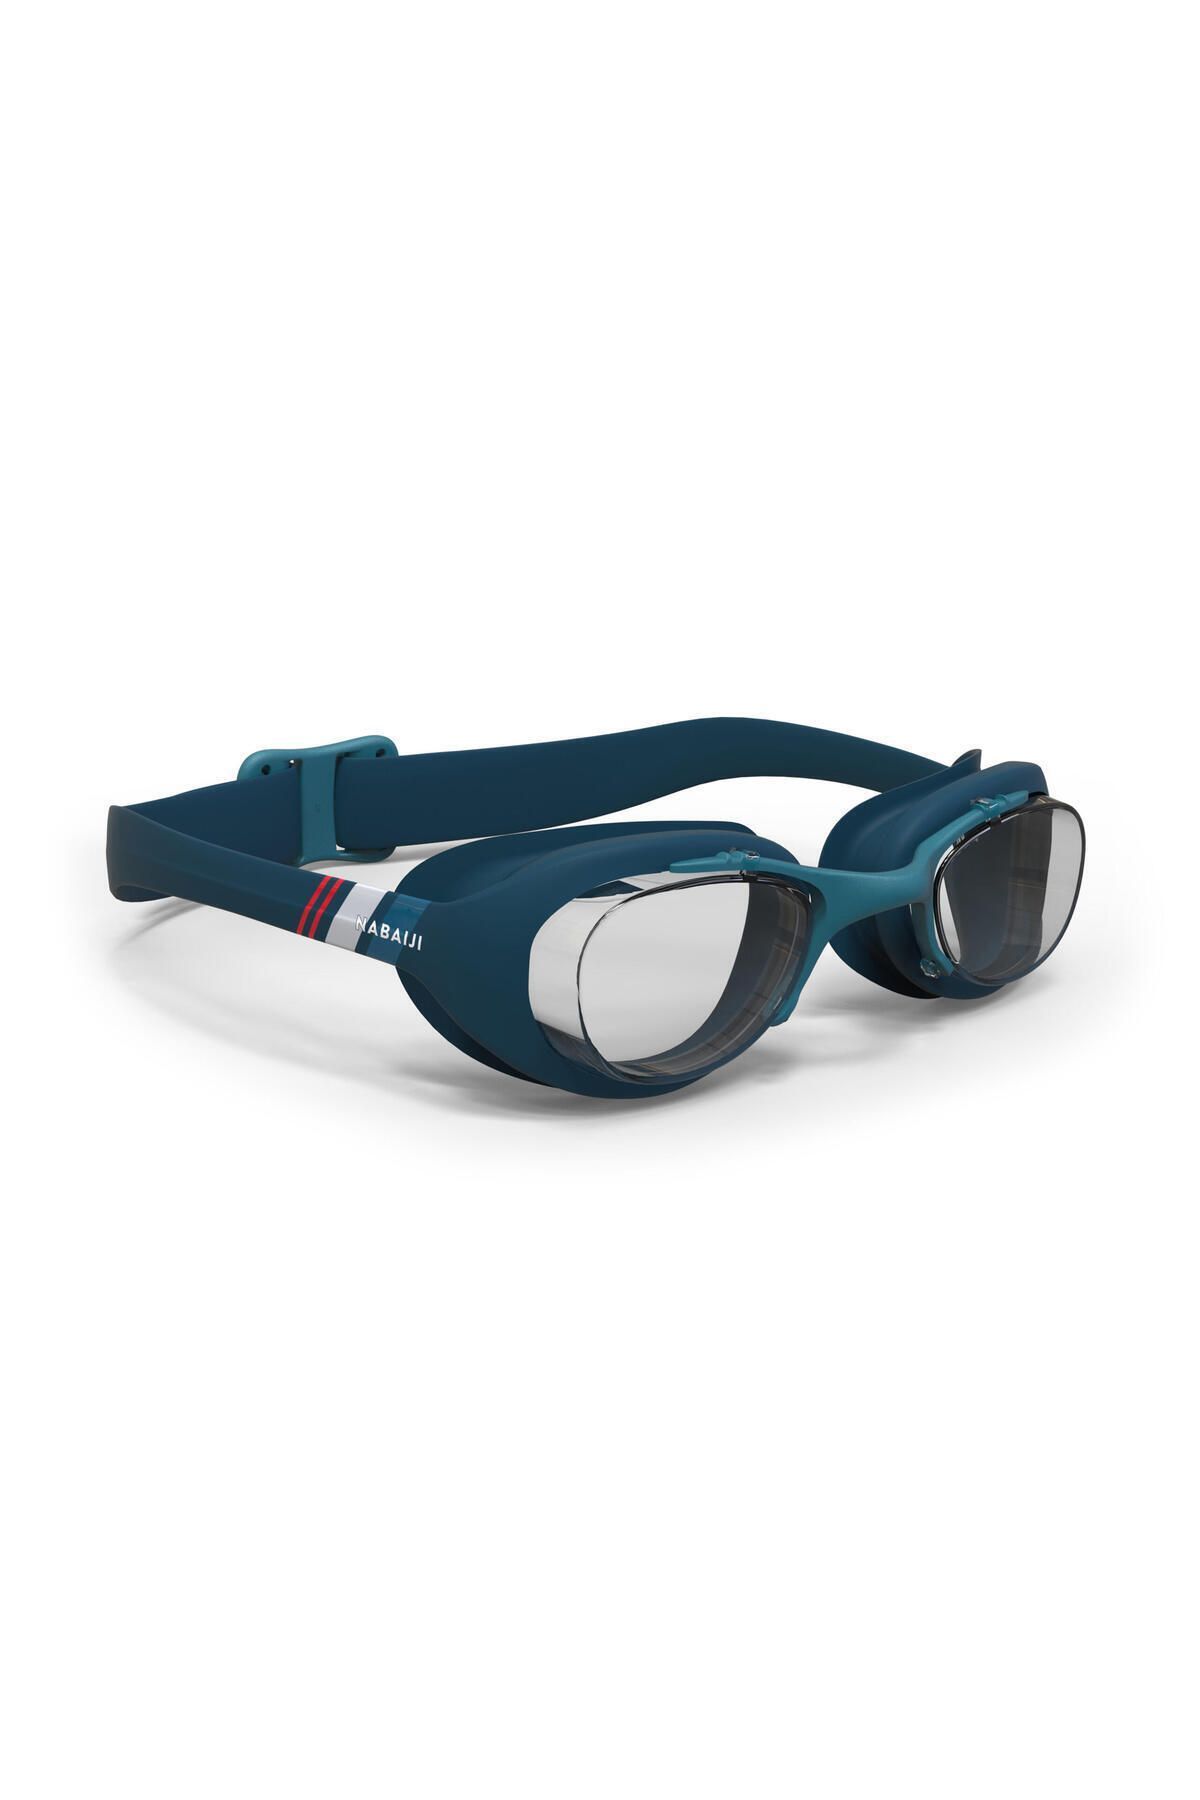 Decathlon Nabaiji Yüzücü Gözlüğü - L Boy - Mavi / Lacivert / Kırmızı - 100 Xbase